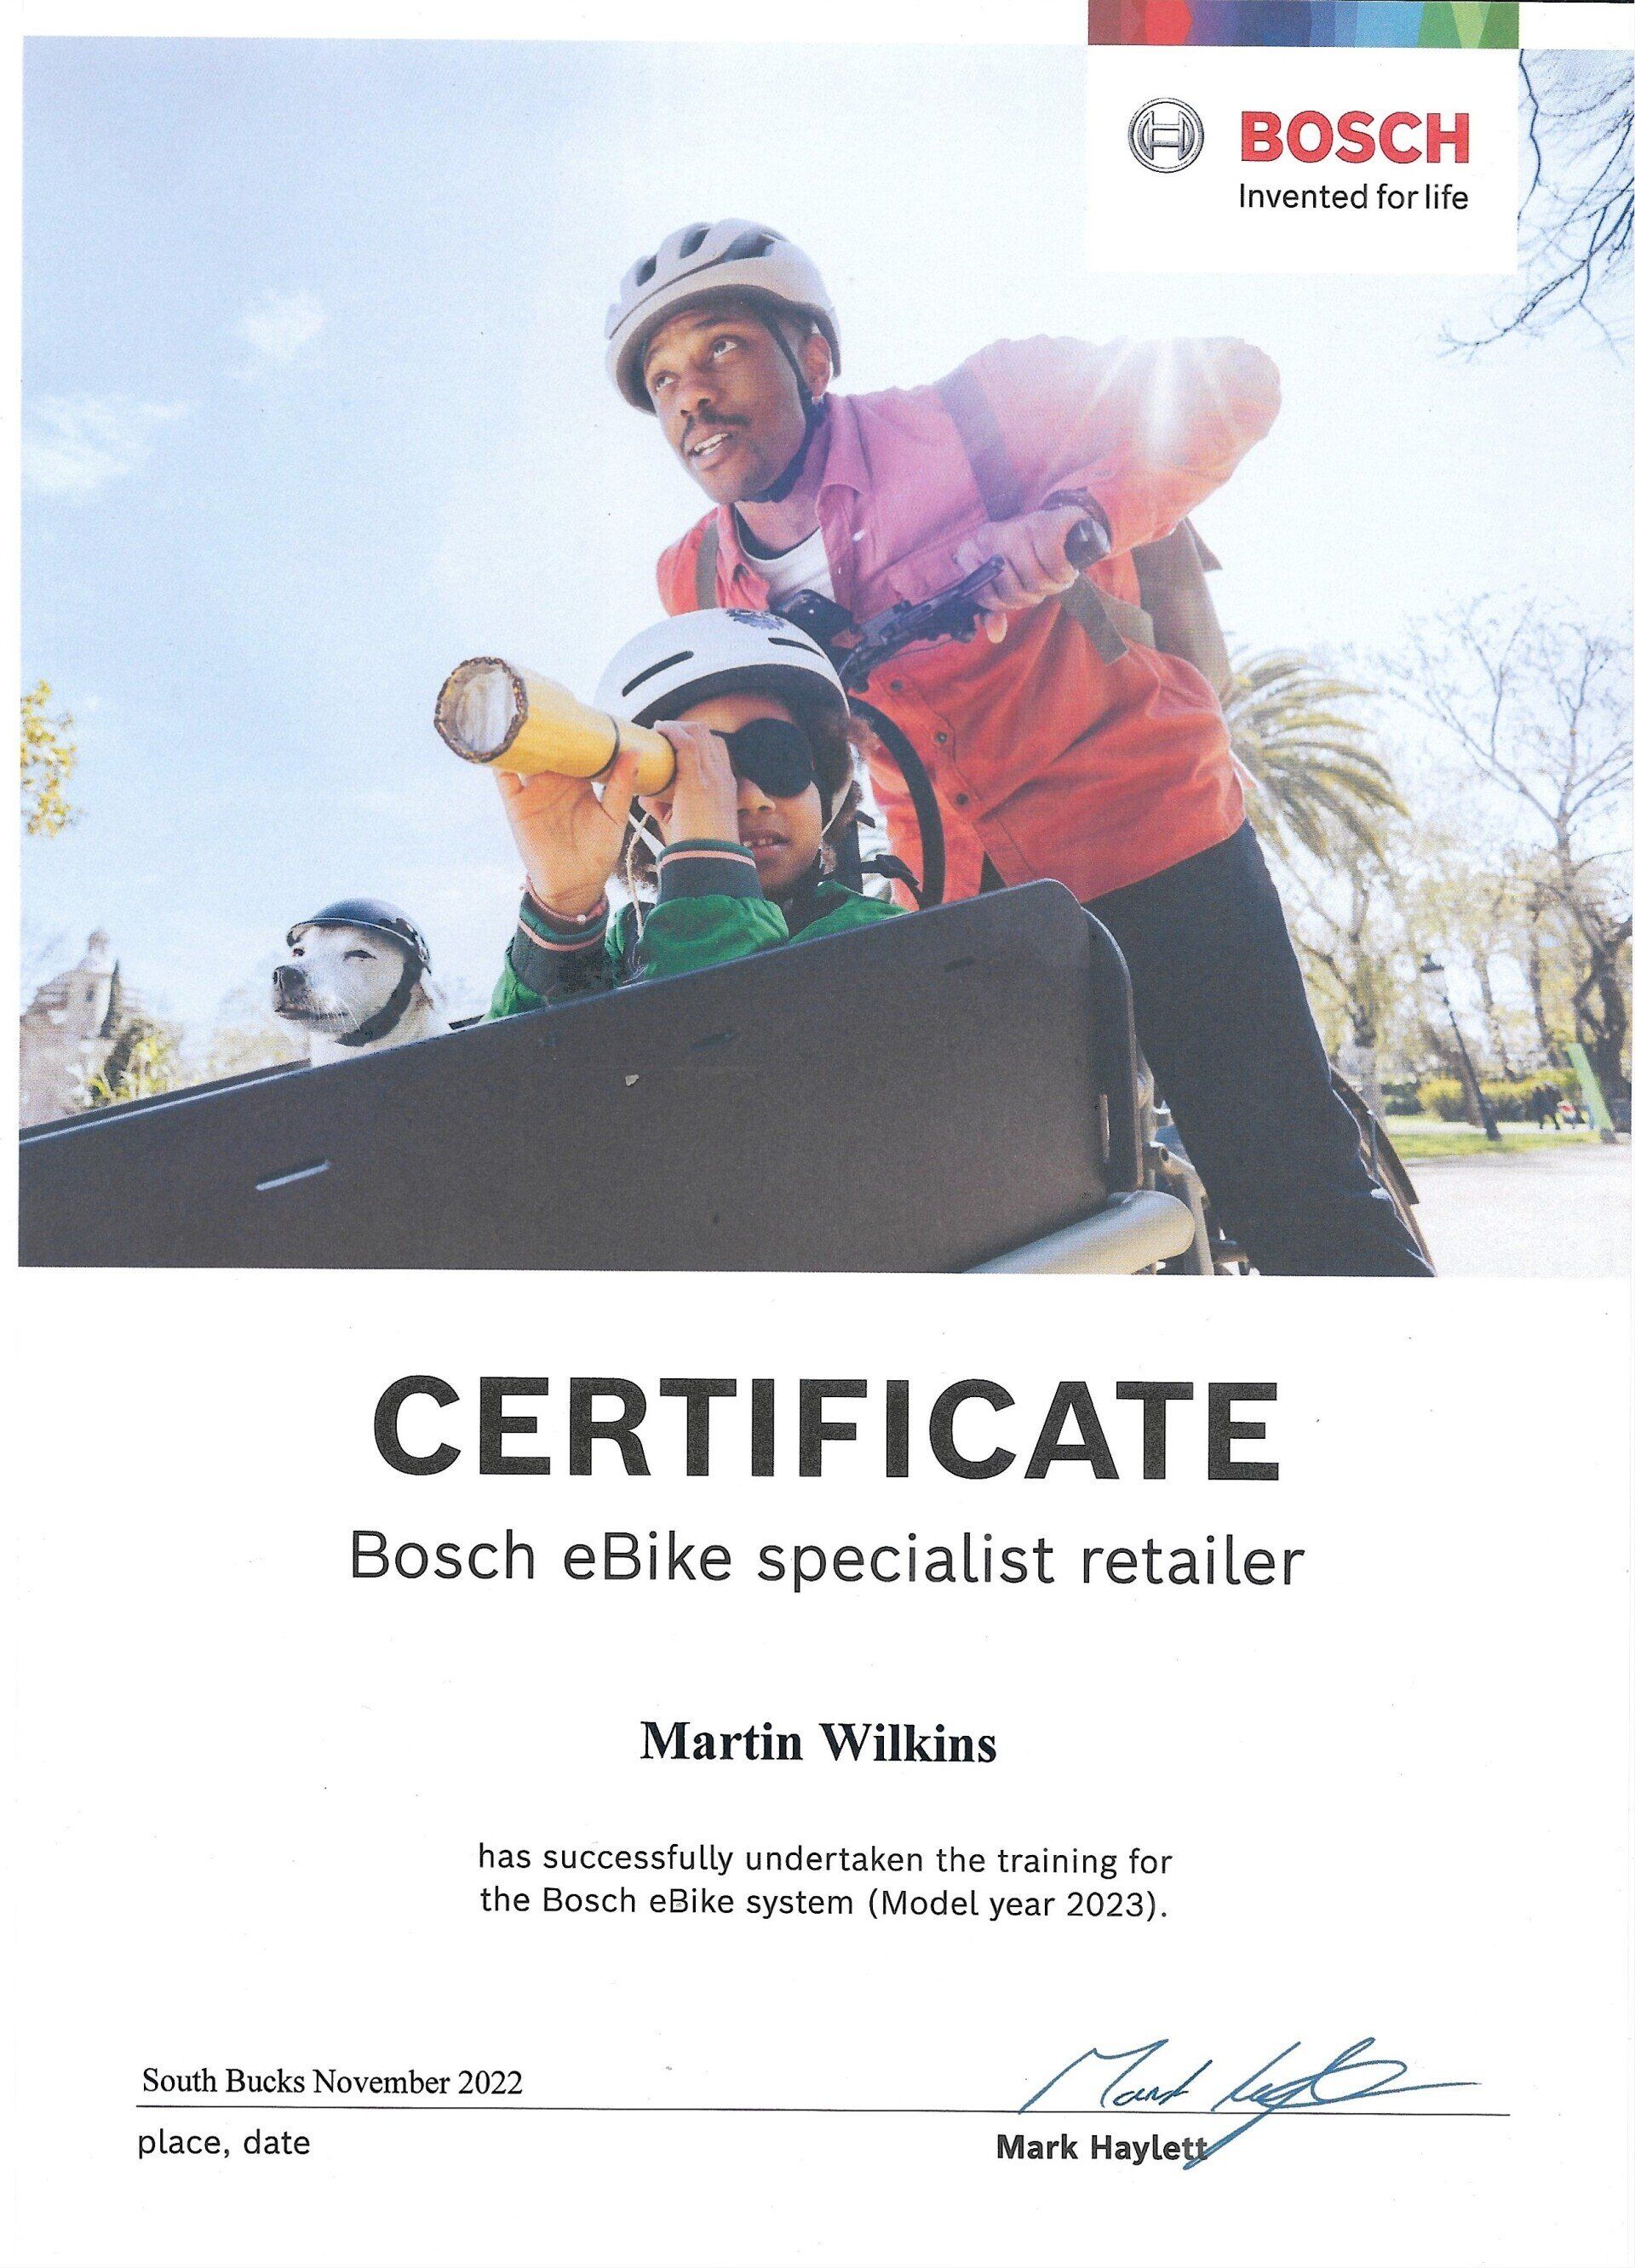 BOSCH e bike expert certificated